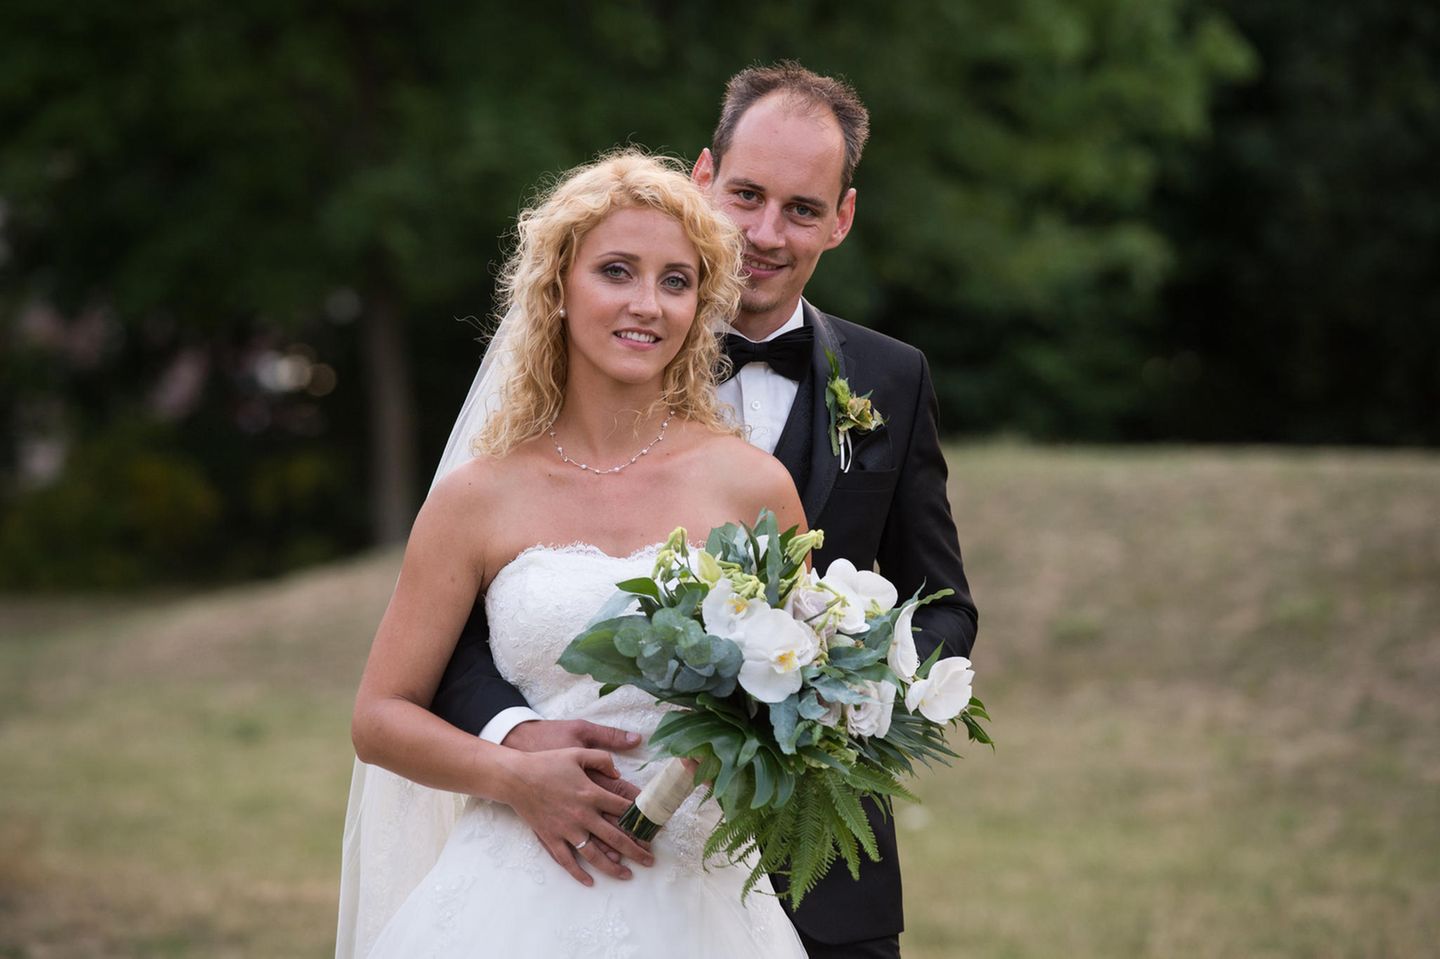 Hochzeit auf den ersten Blick: Bräutigam umarmt Braut von hinten